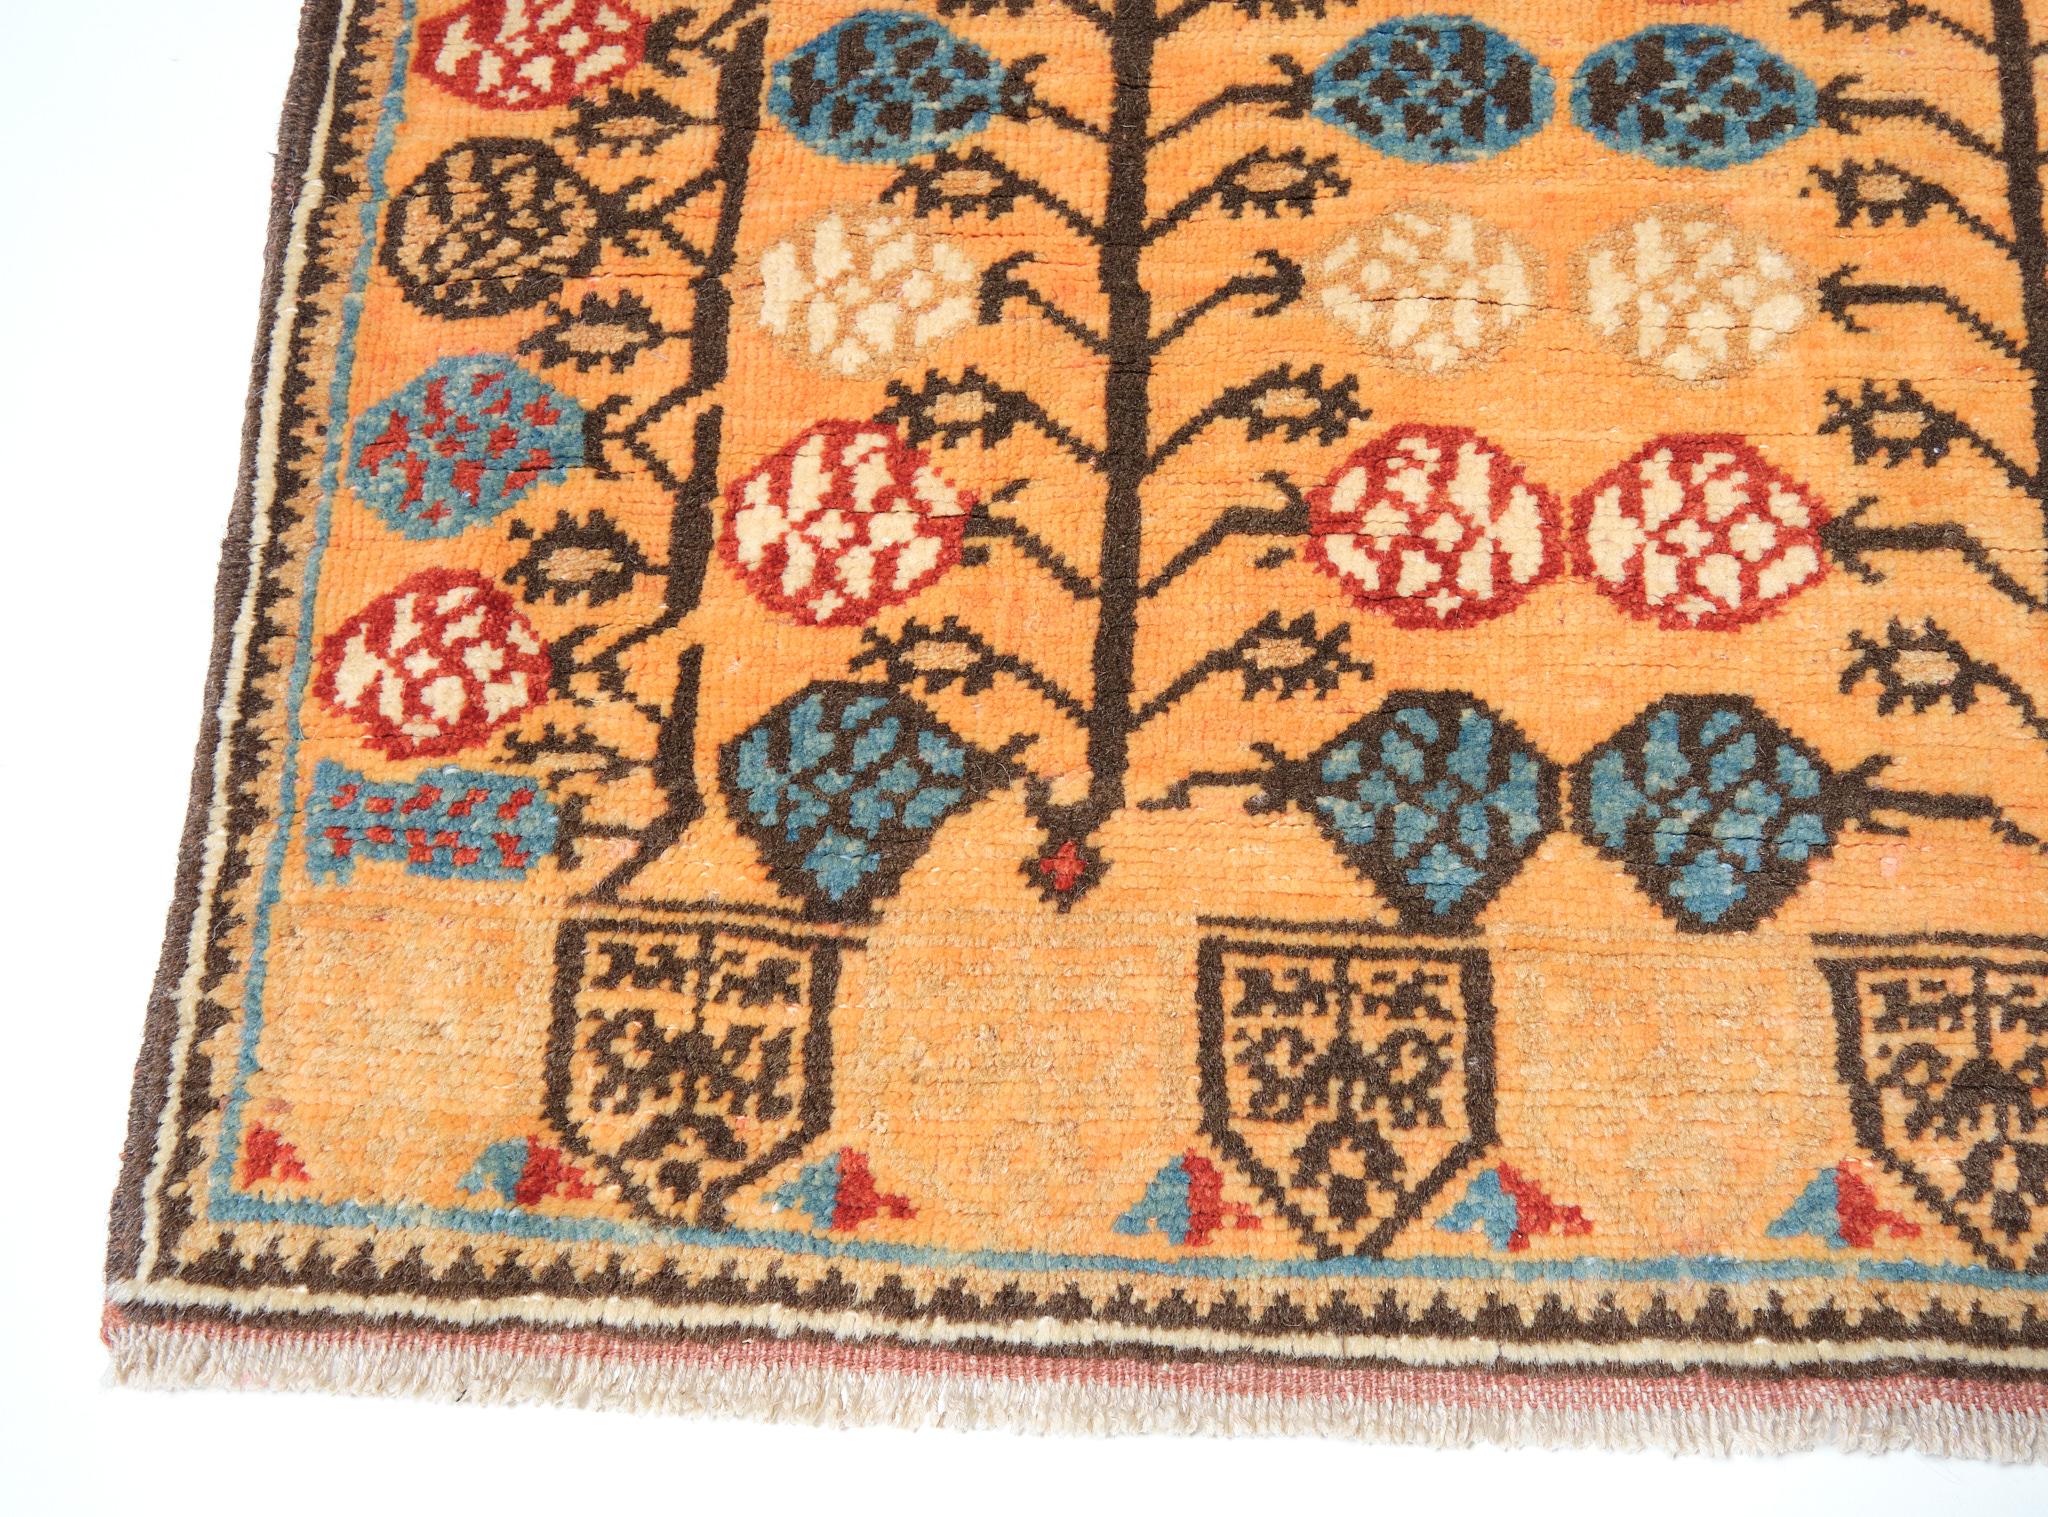 Dies ist ein beliebtes Muster der Türken, ein Teppich aus der Türkei, Gebiet Zentralanatolien, aus dem 17. Stilisierte Granatapfelbäume mit Blüten und Früchten, viele verschiedenfarbige florale Figuren auf orangefarbenem Grund mit beidseitigem